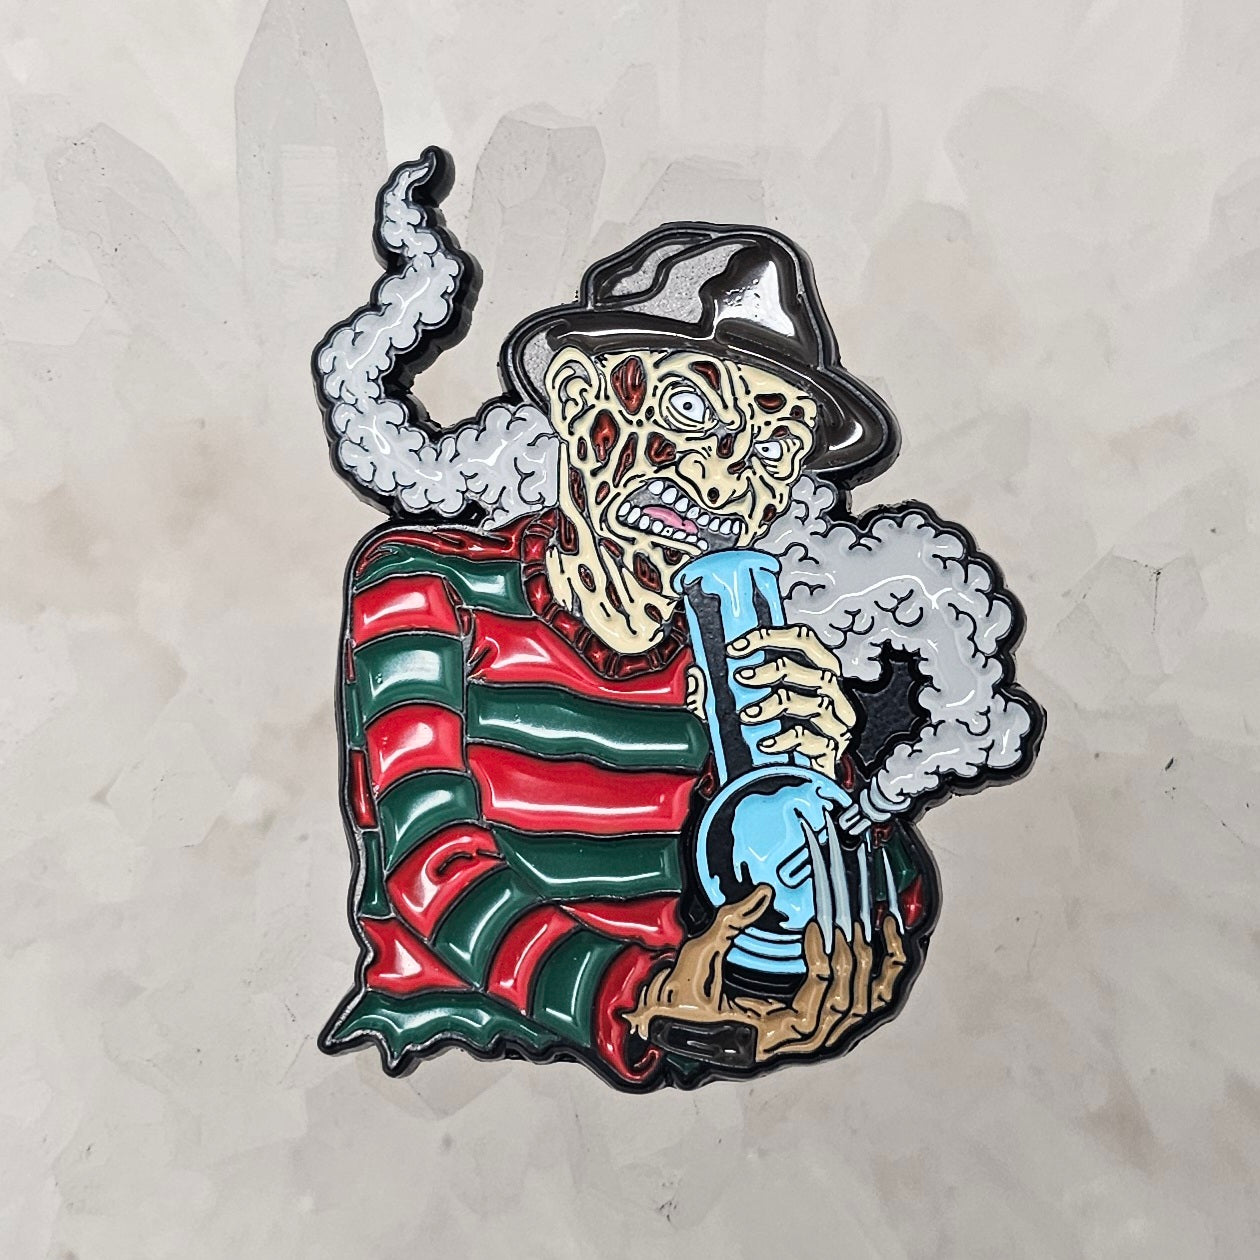 Weed Freak Freddy Nightmare On Krueger Elm Street Enamel Pins Hat Pins Lapel Pin Brooch Badge Festival Pin